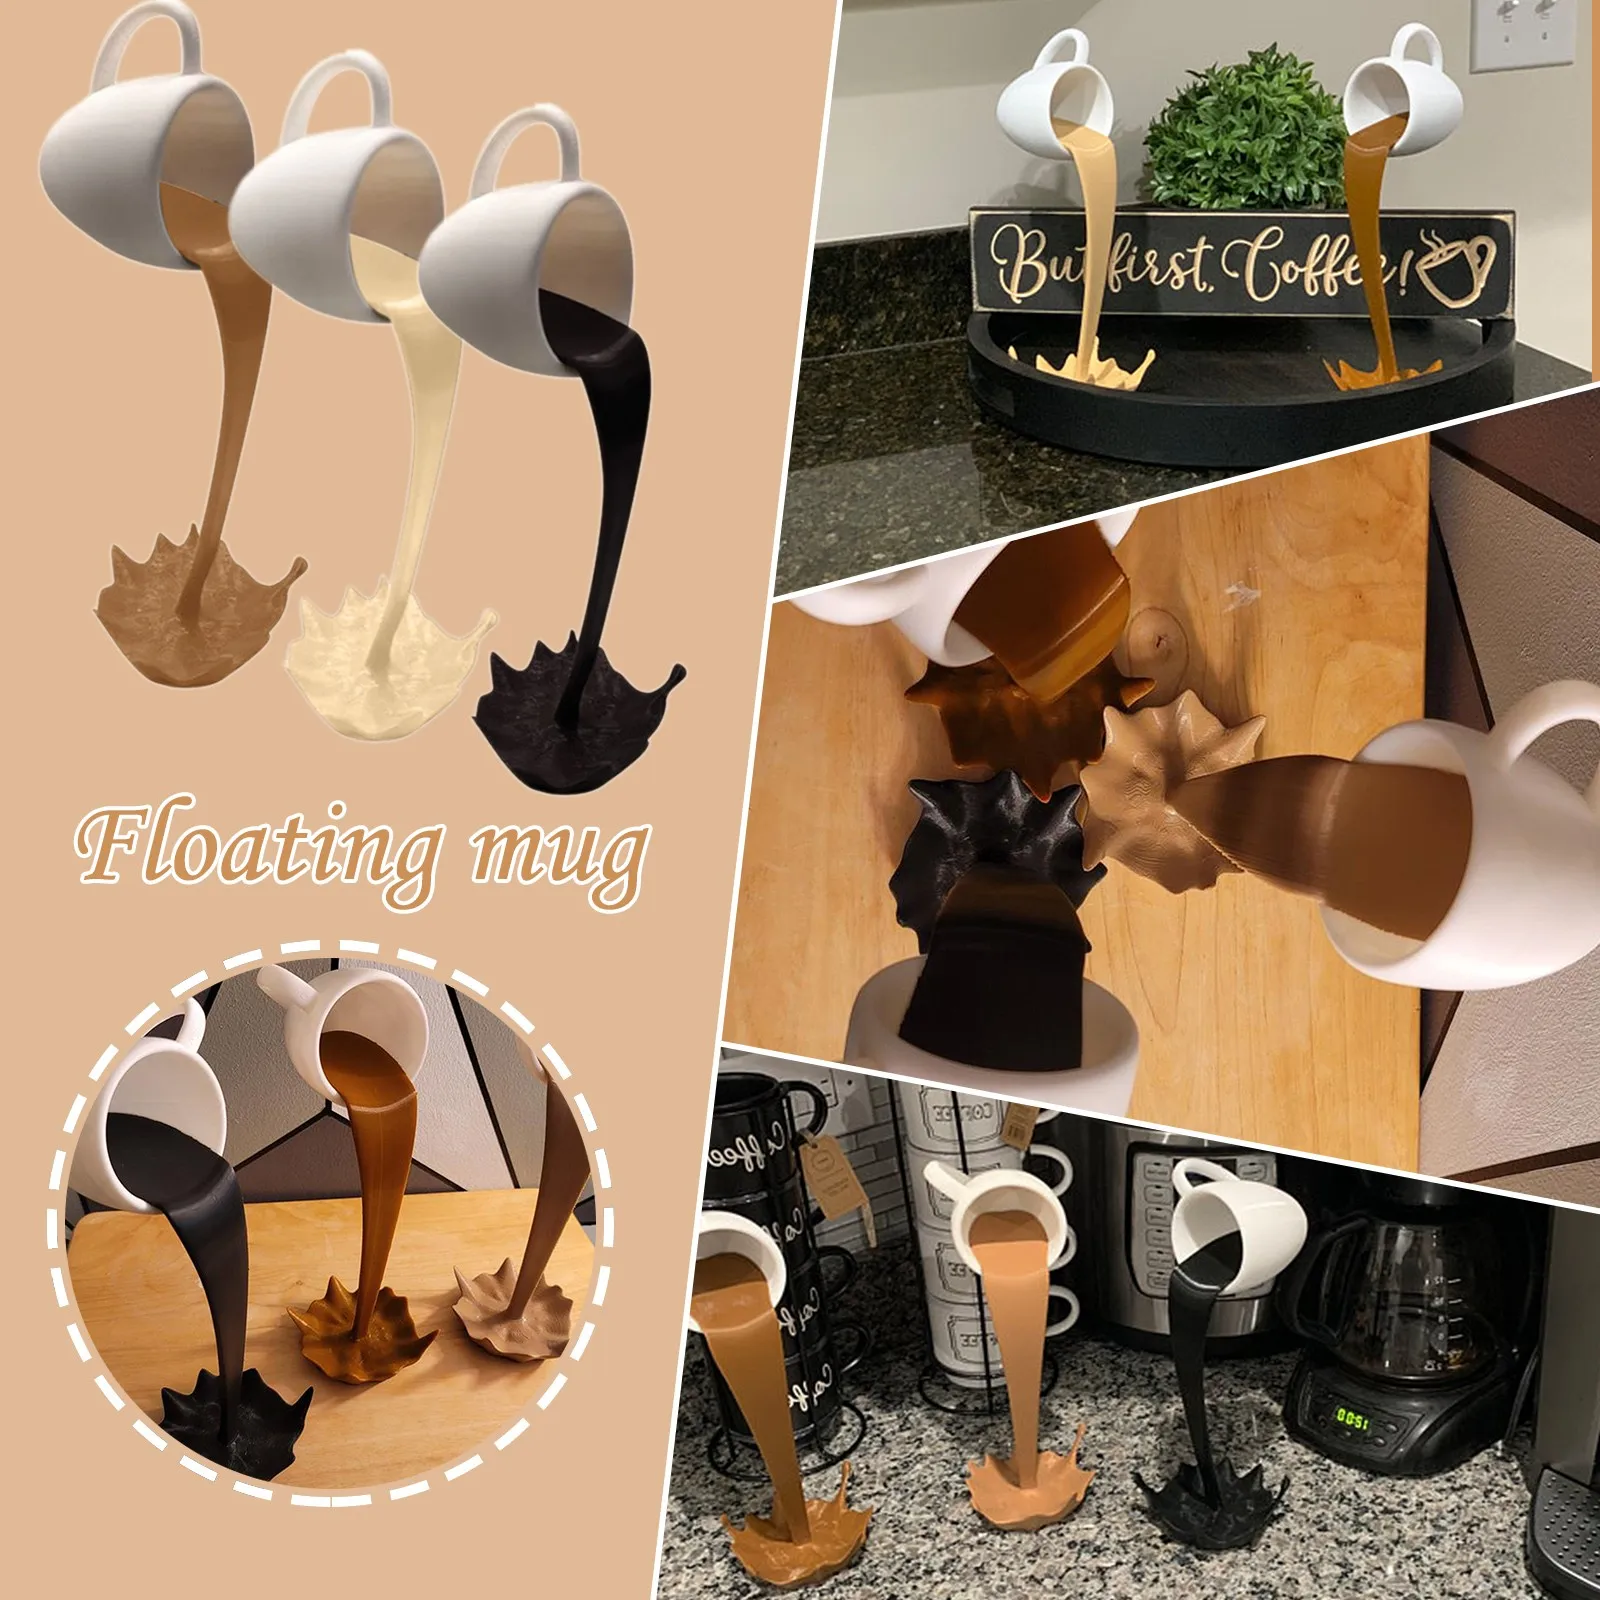 S-TROUBLE Taza de café Flotante Escultura Decoración de Cocina Resina Verter Derramar Taza Estatuas Divertidas Arte Decoración de Cocina 